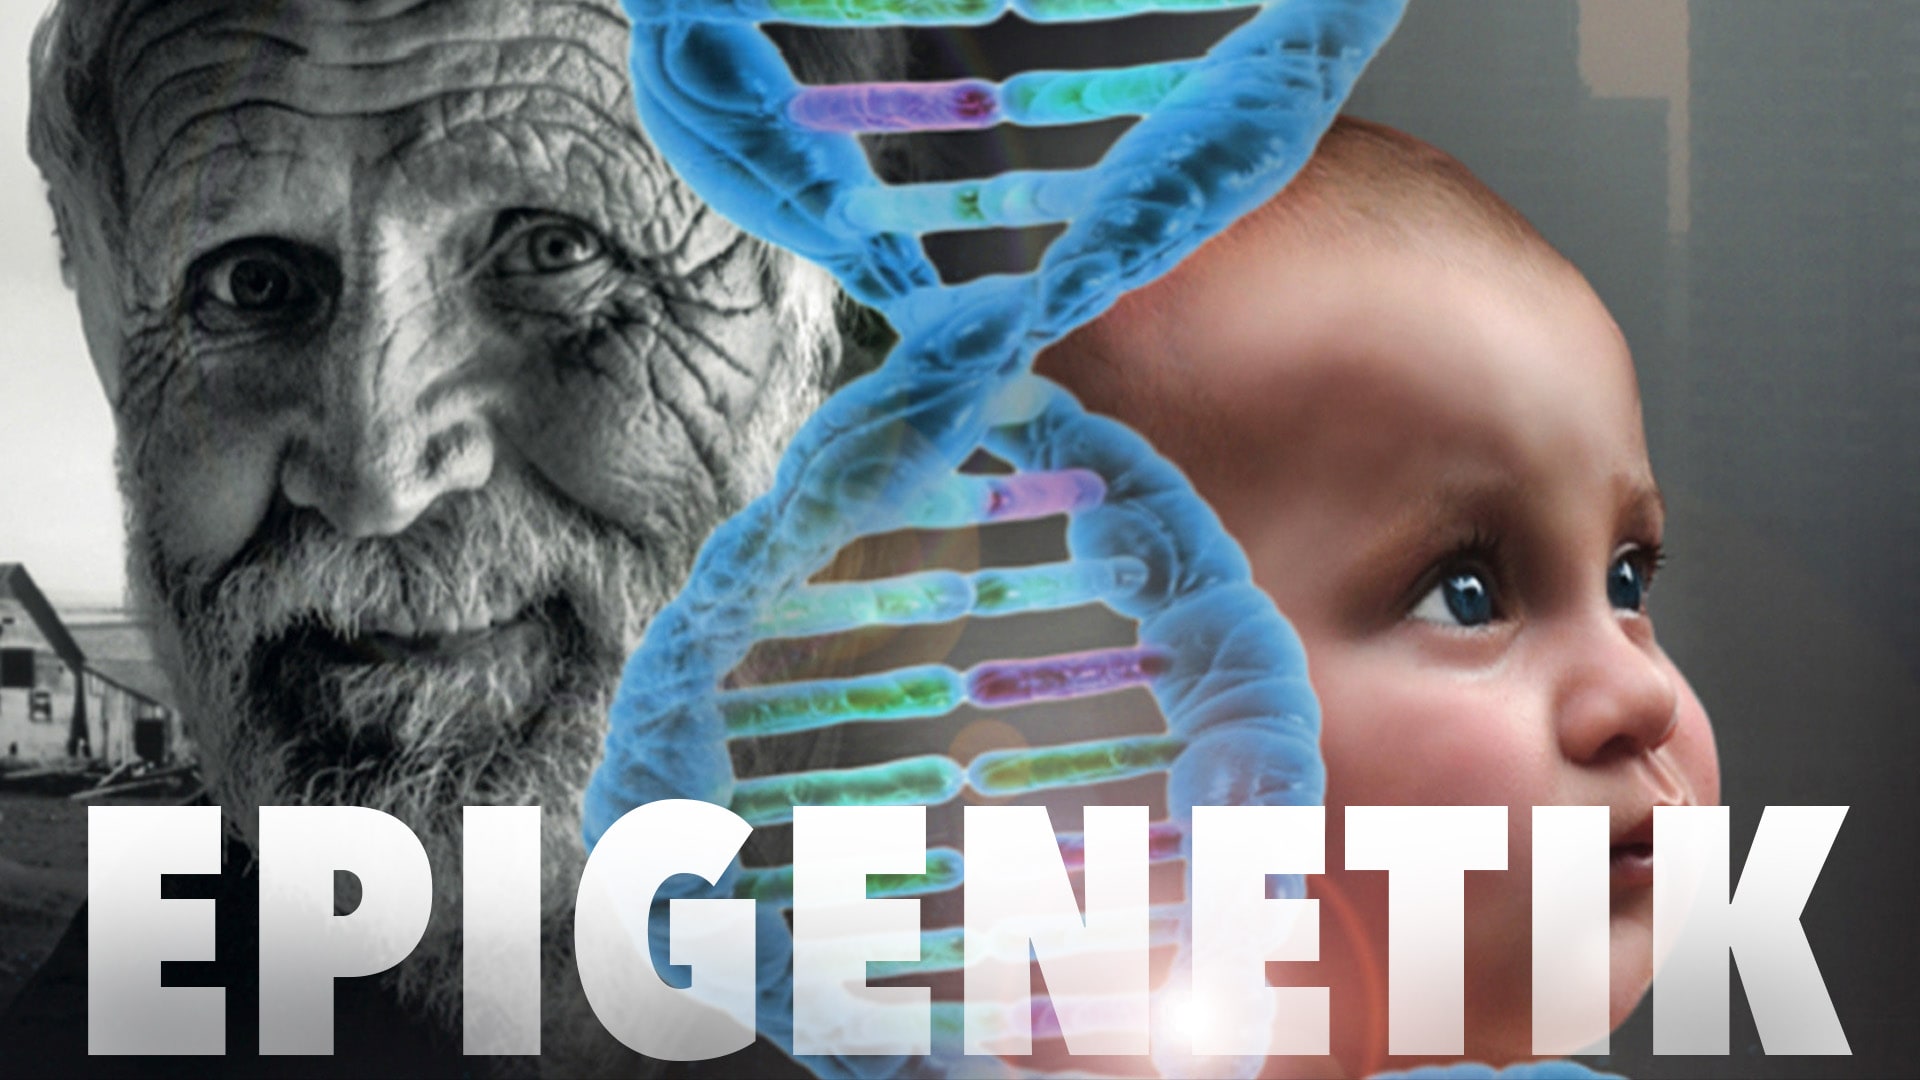 Epigenetik – Sind wir Gene oder Umwelt?